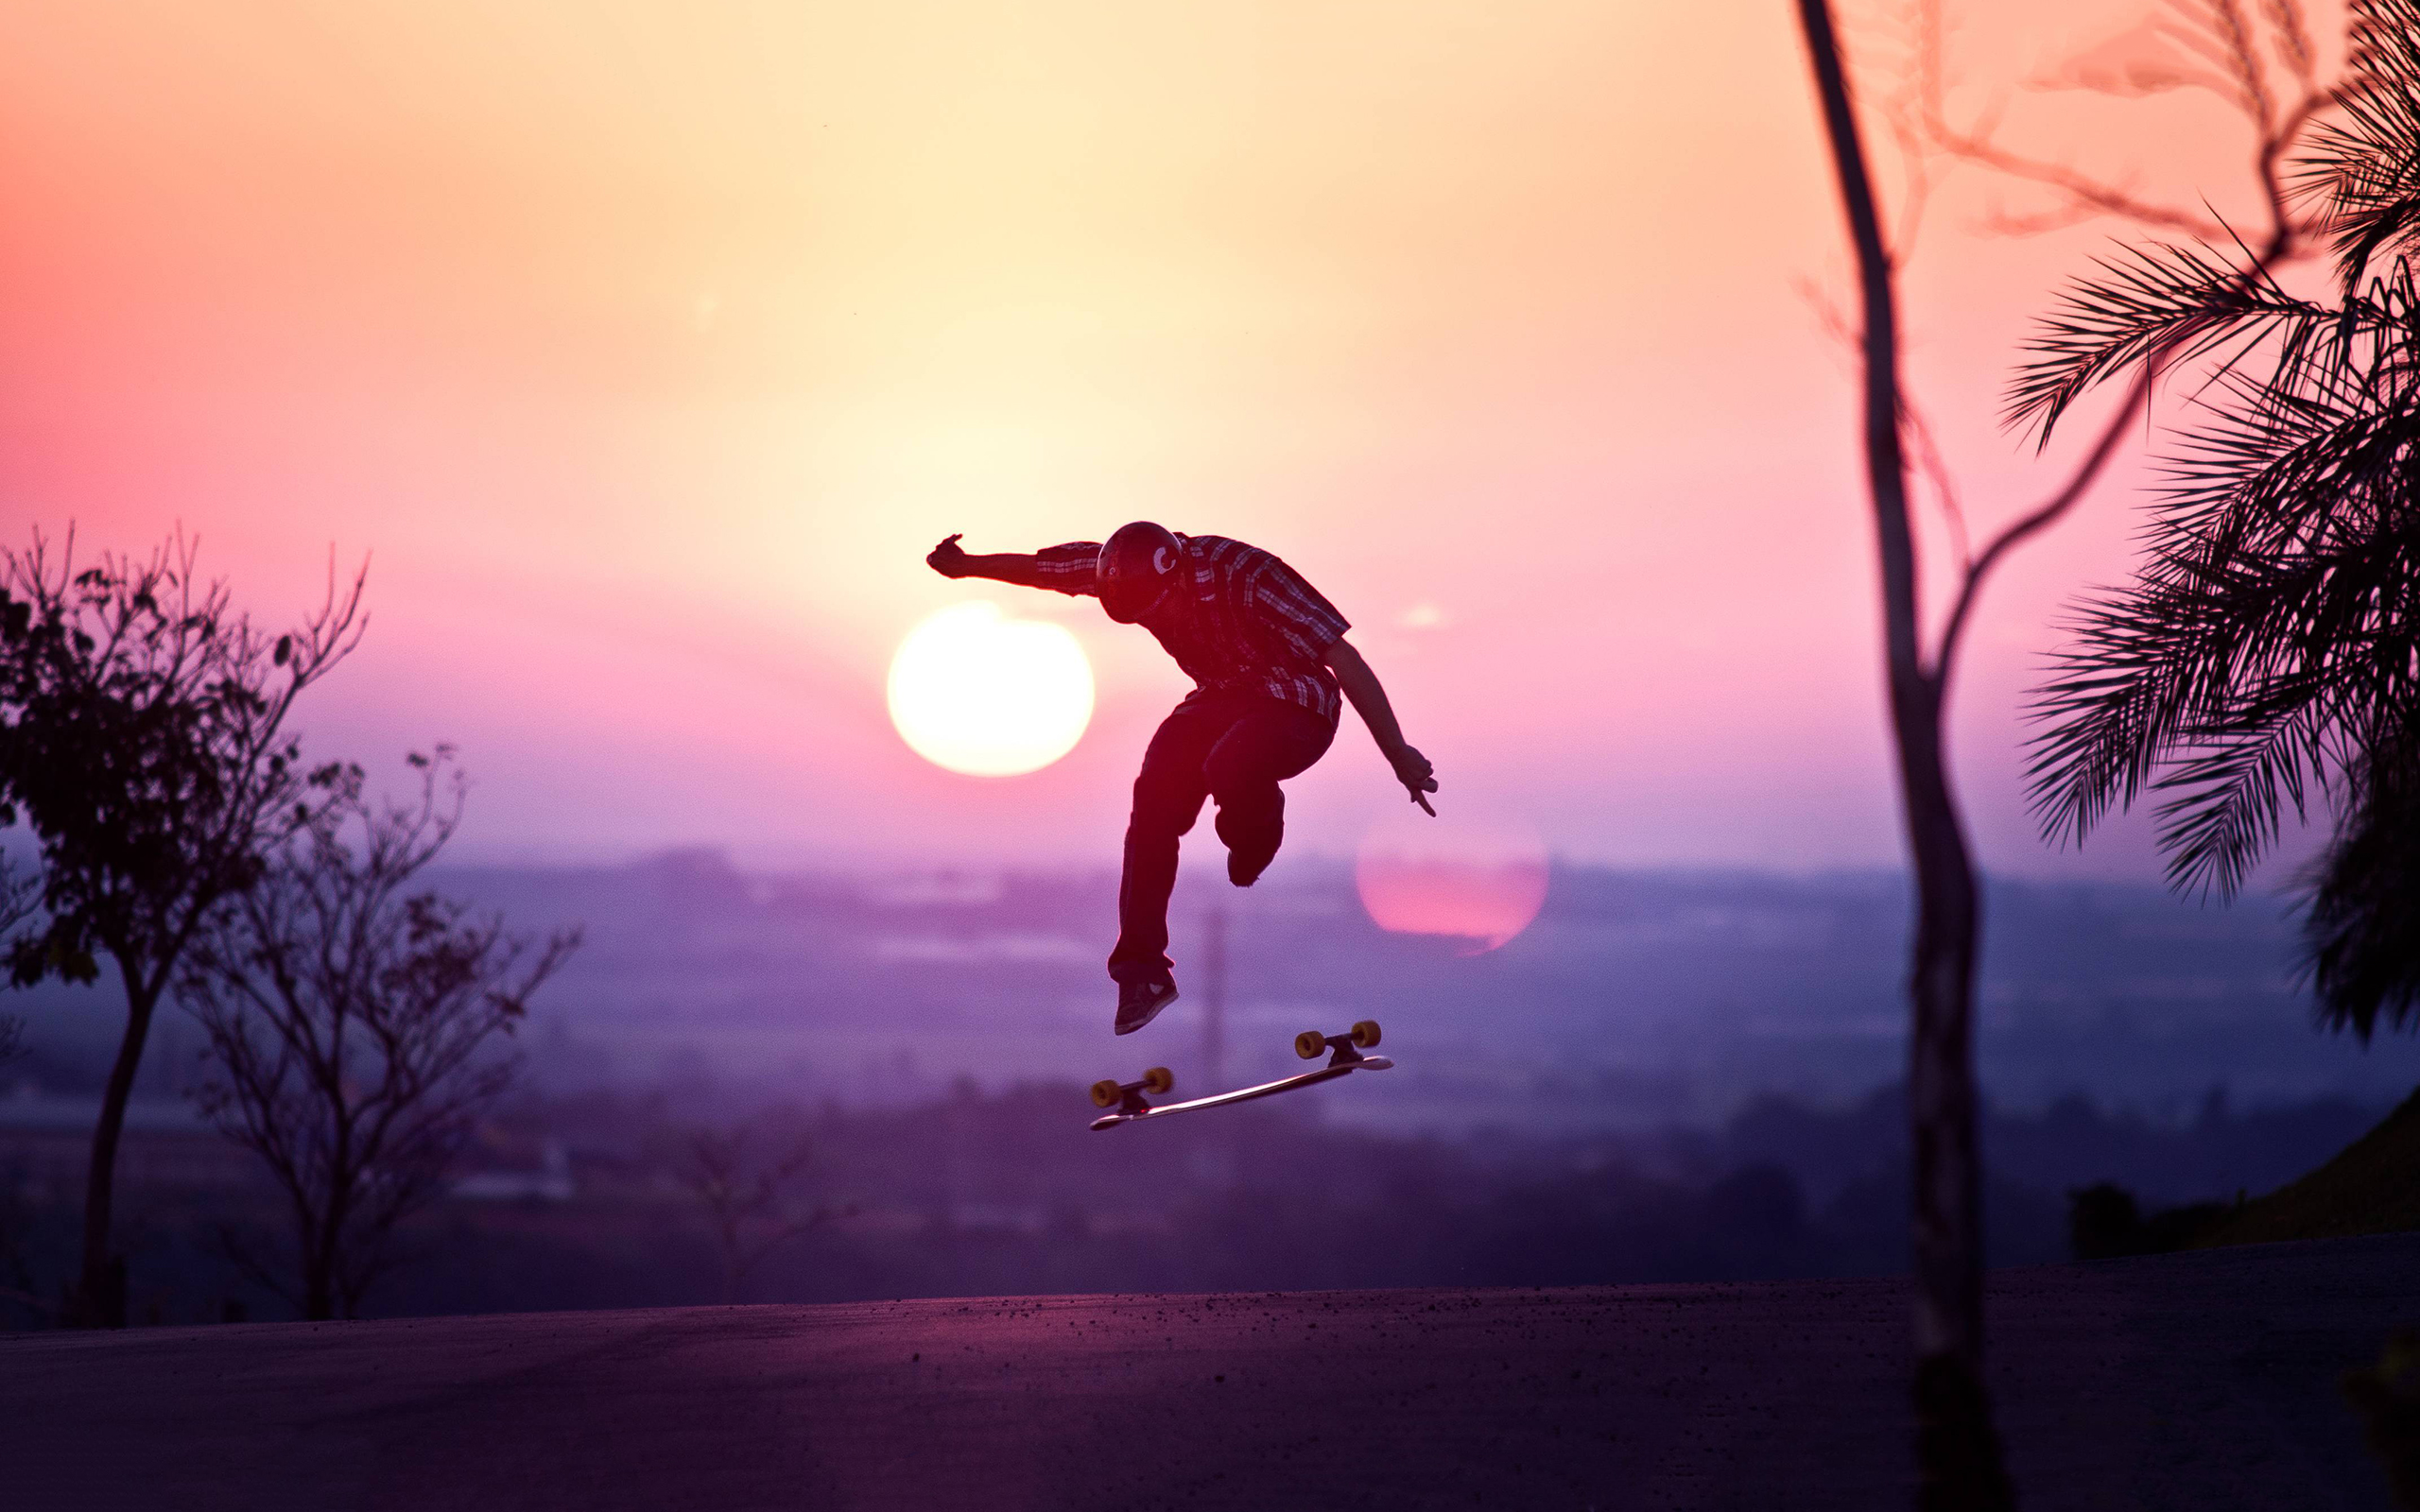 Skateboarding Longboard Sunset , HD Wallpaper & Backgrounds